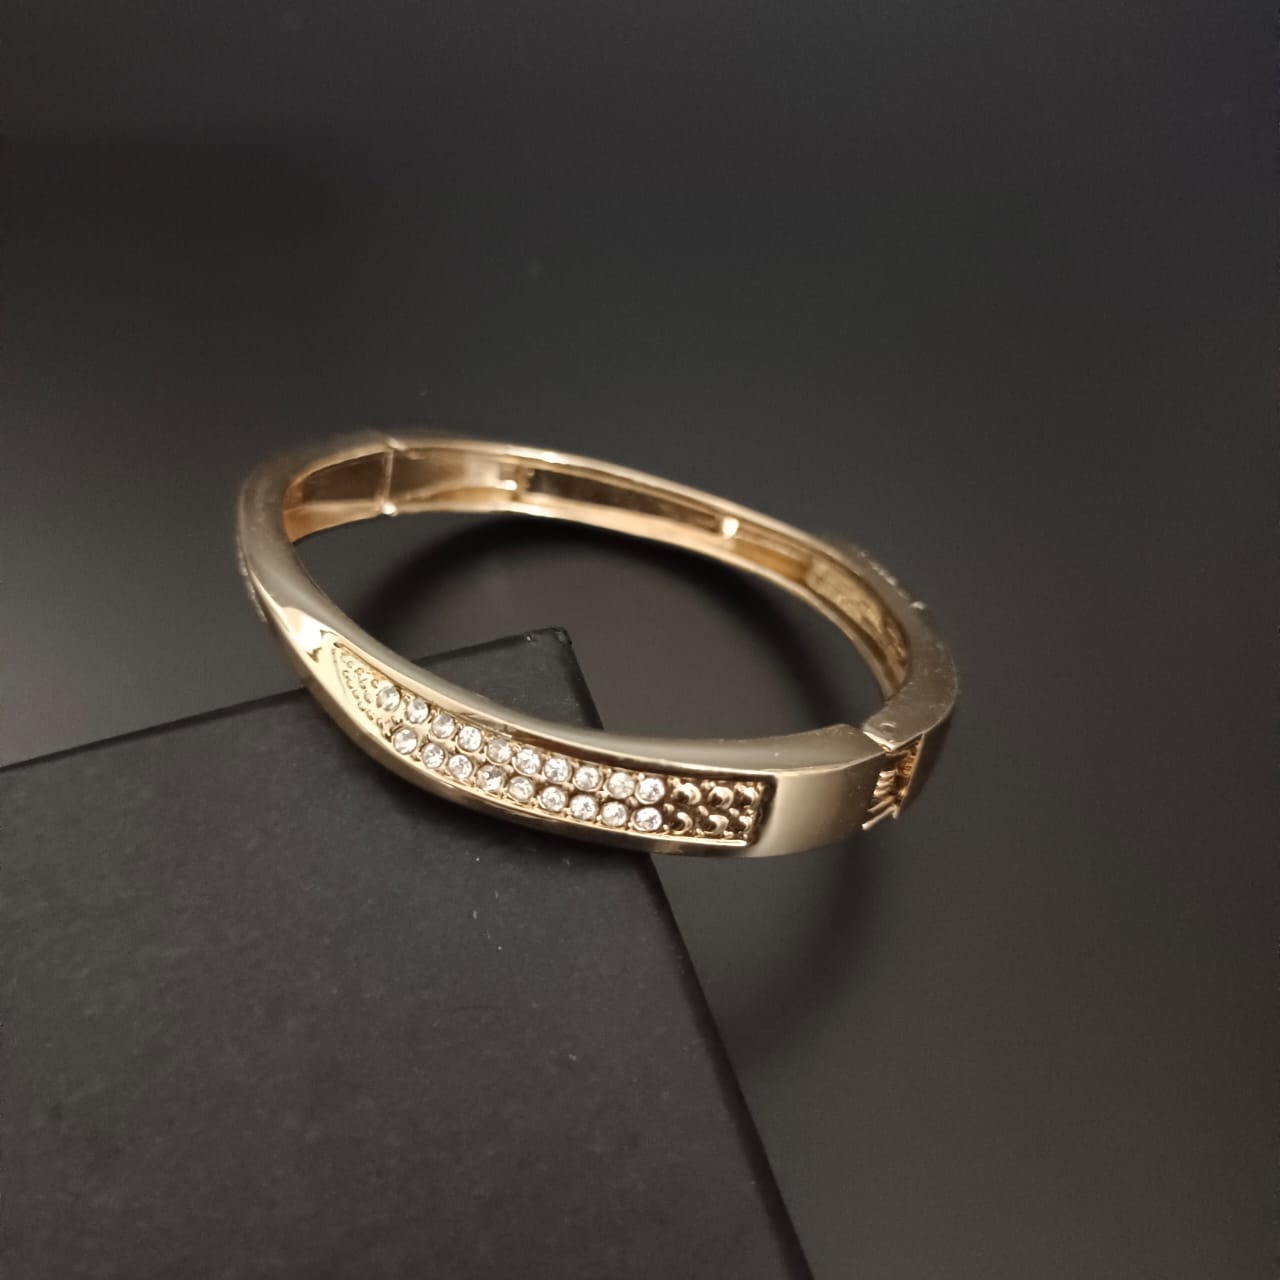 New Gold Diamond Kada Bracelet For Women and Girl-Jack Marc